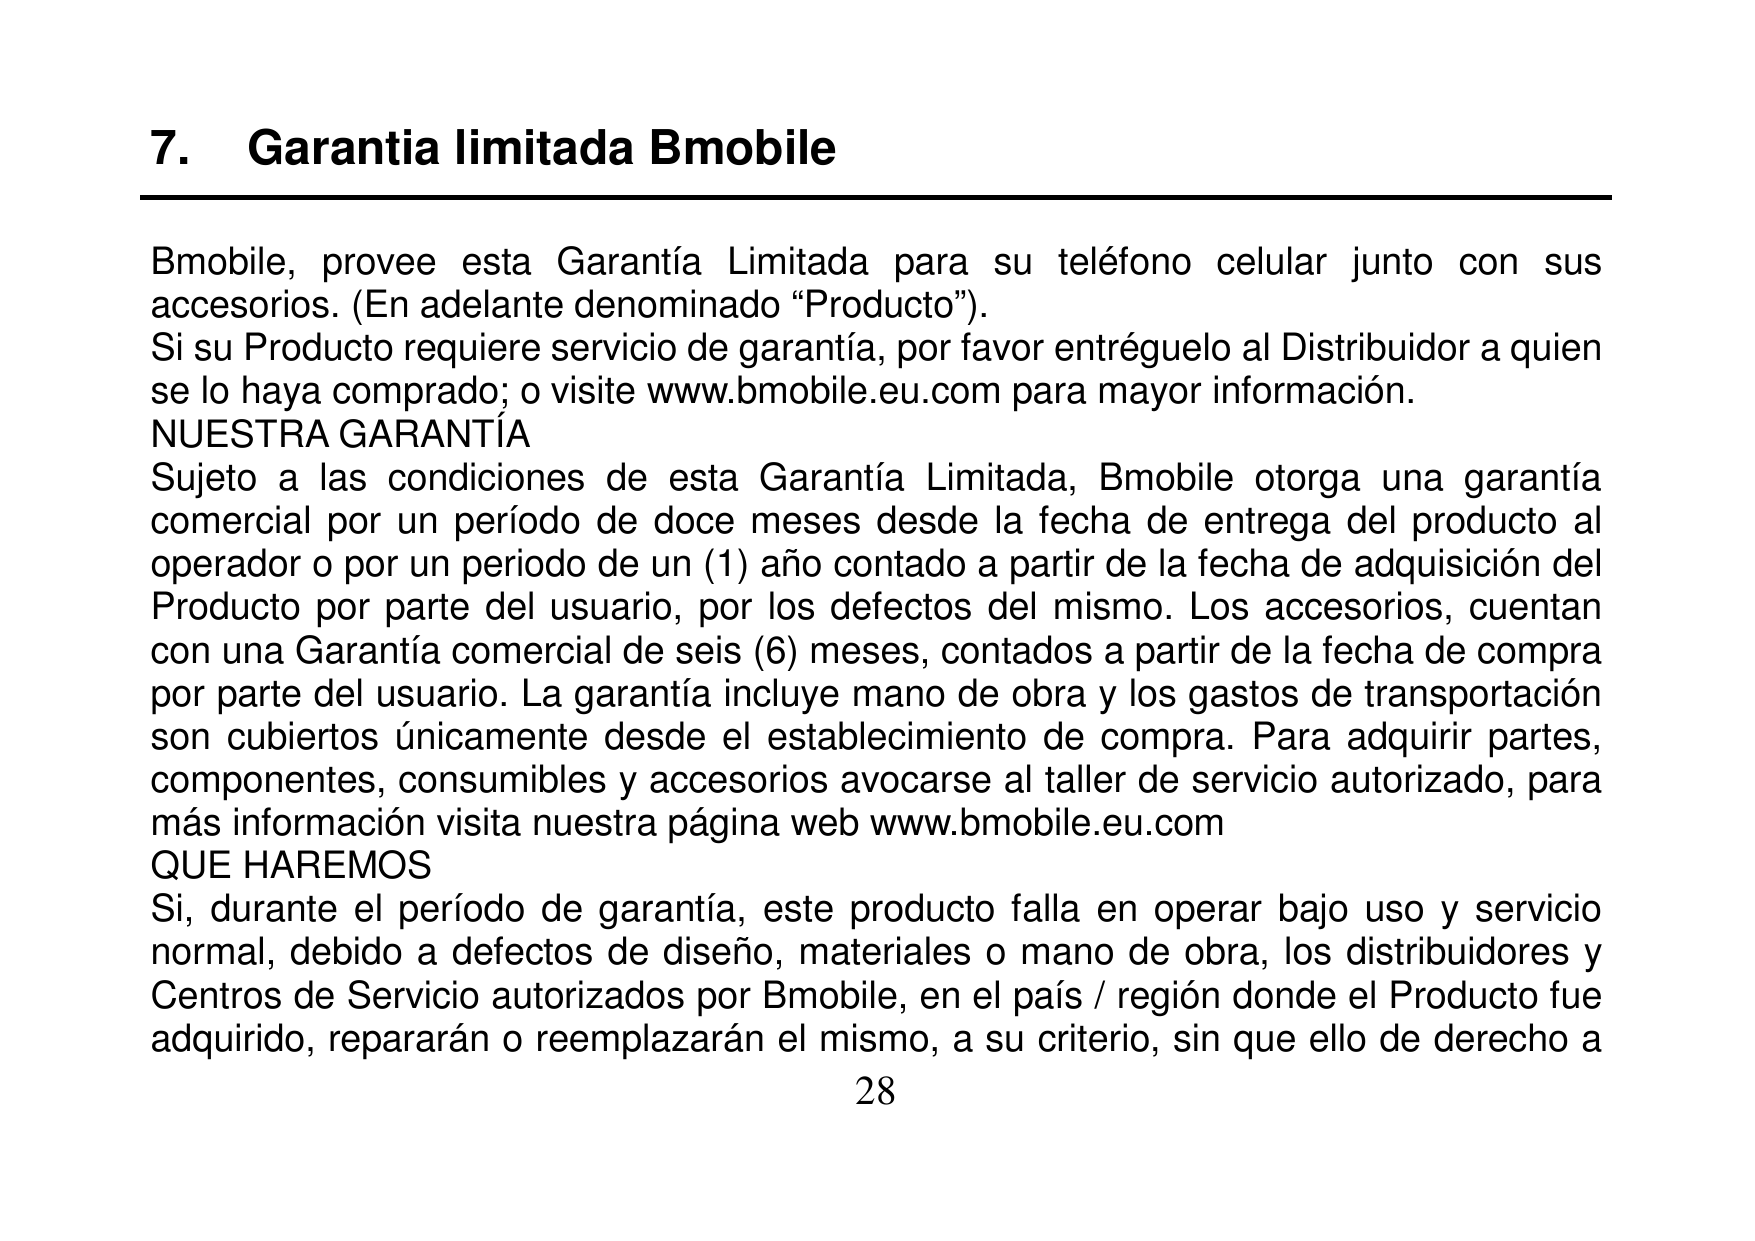 7.Garantia limitada BmobileBmobile, provee esta Garantía Limitada para su teléfono celular junto con susaccesorios. (En adelante